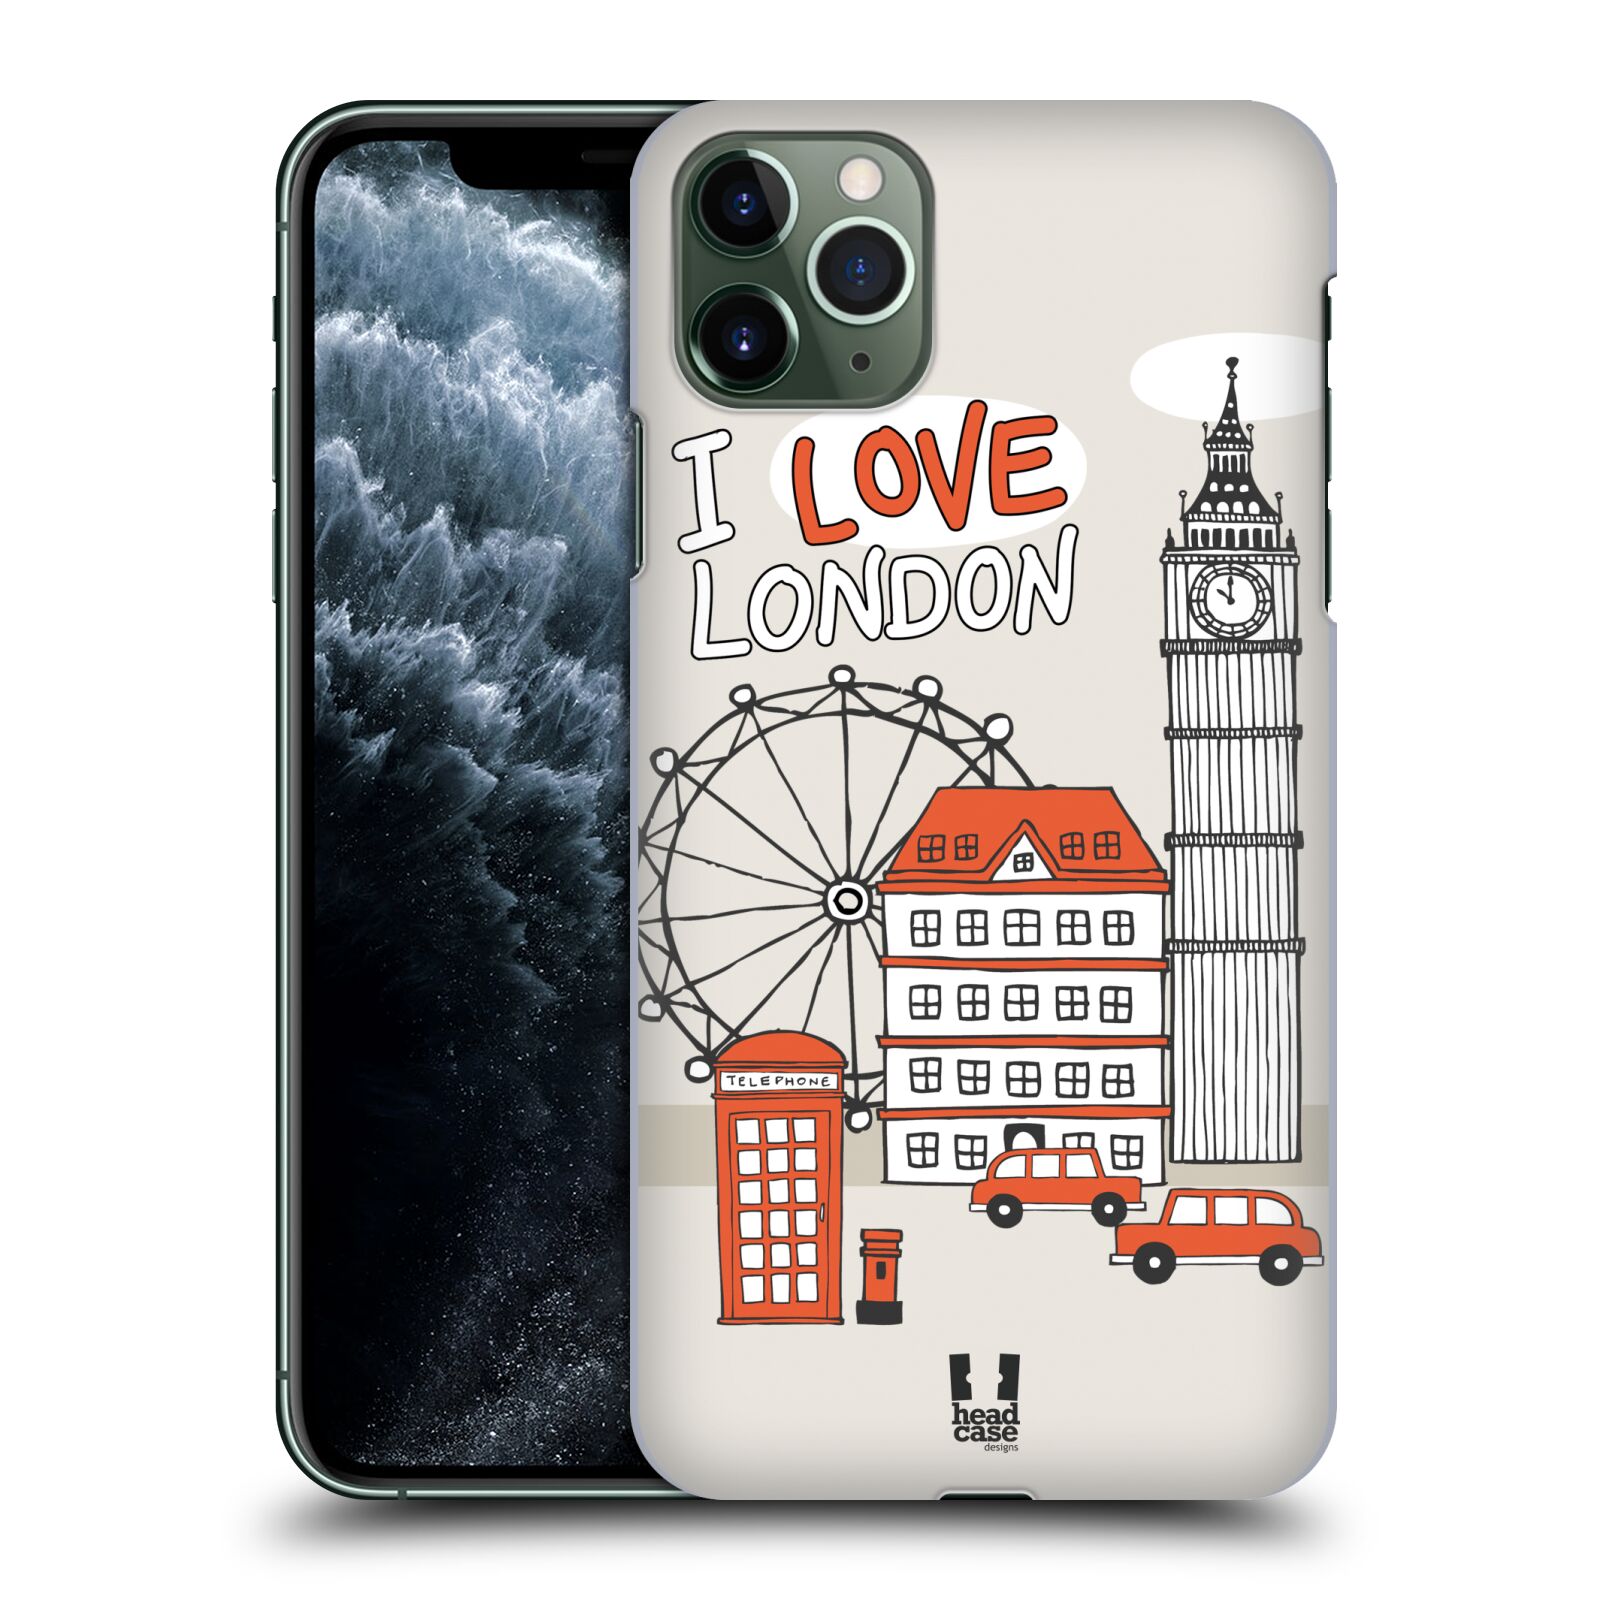 Pouzdro na mobil Apple Iphone 11 PRO MAX - HEAD CASE - vzor Kreslená městečka ČERVENÁ, Anglie, Londýn, I LOVE LONDON